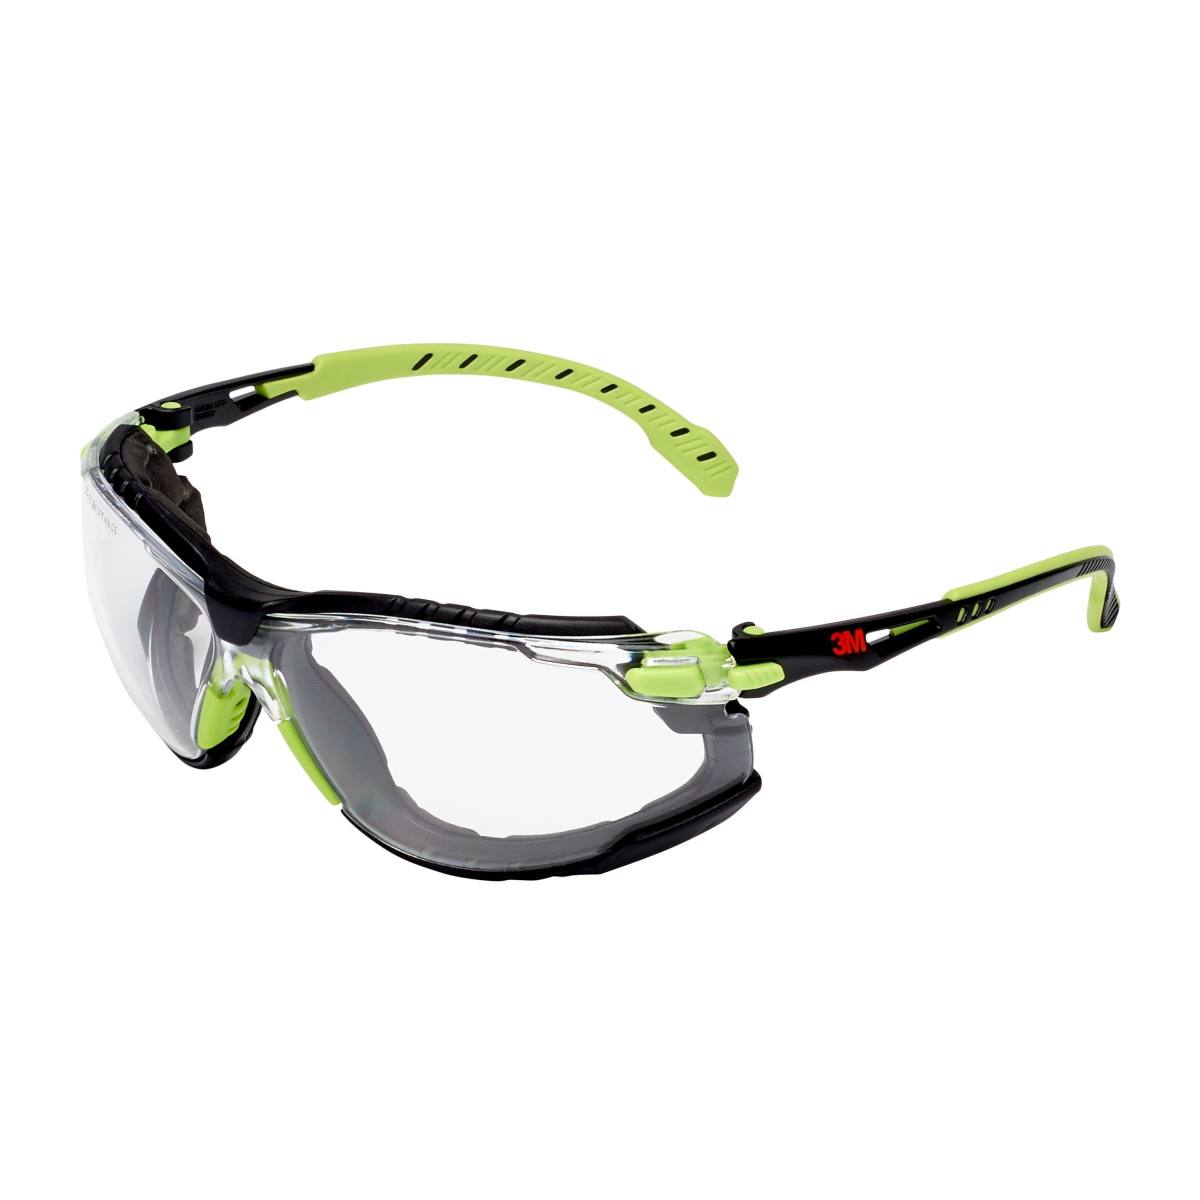 3M Gafas de protección Solus 1000 con tratamiento antivaho, verde/negro, transparentes, con bolsa S1CG